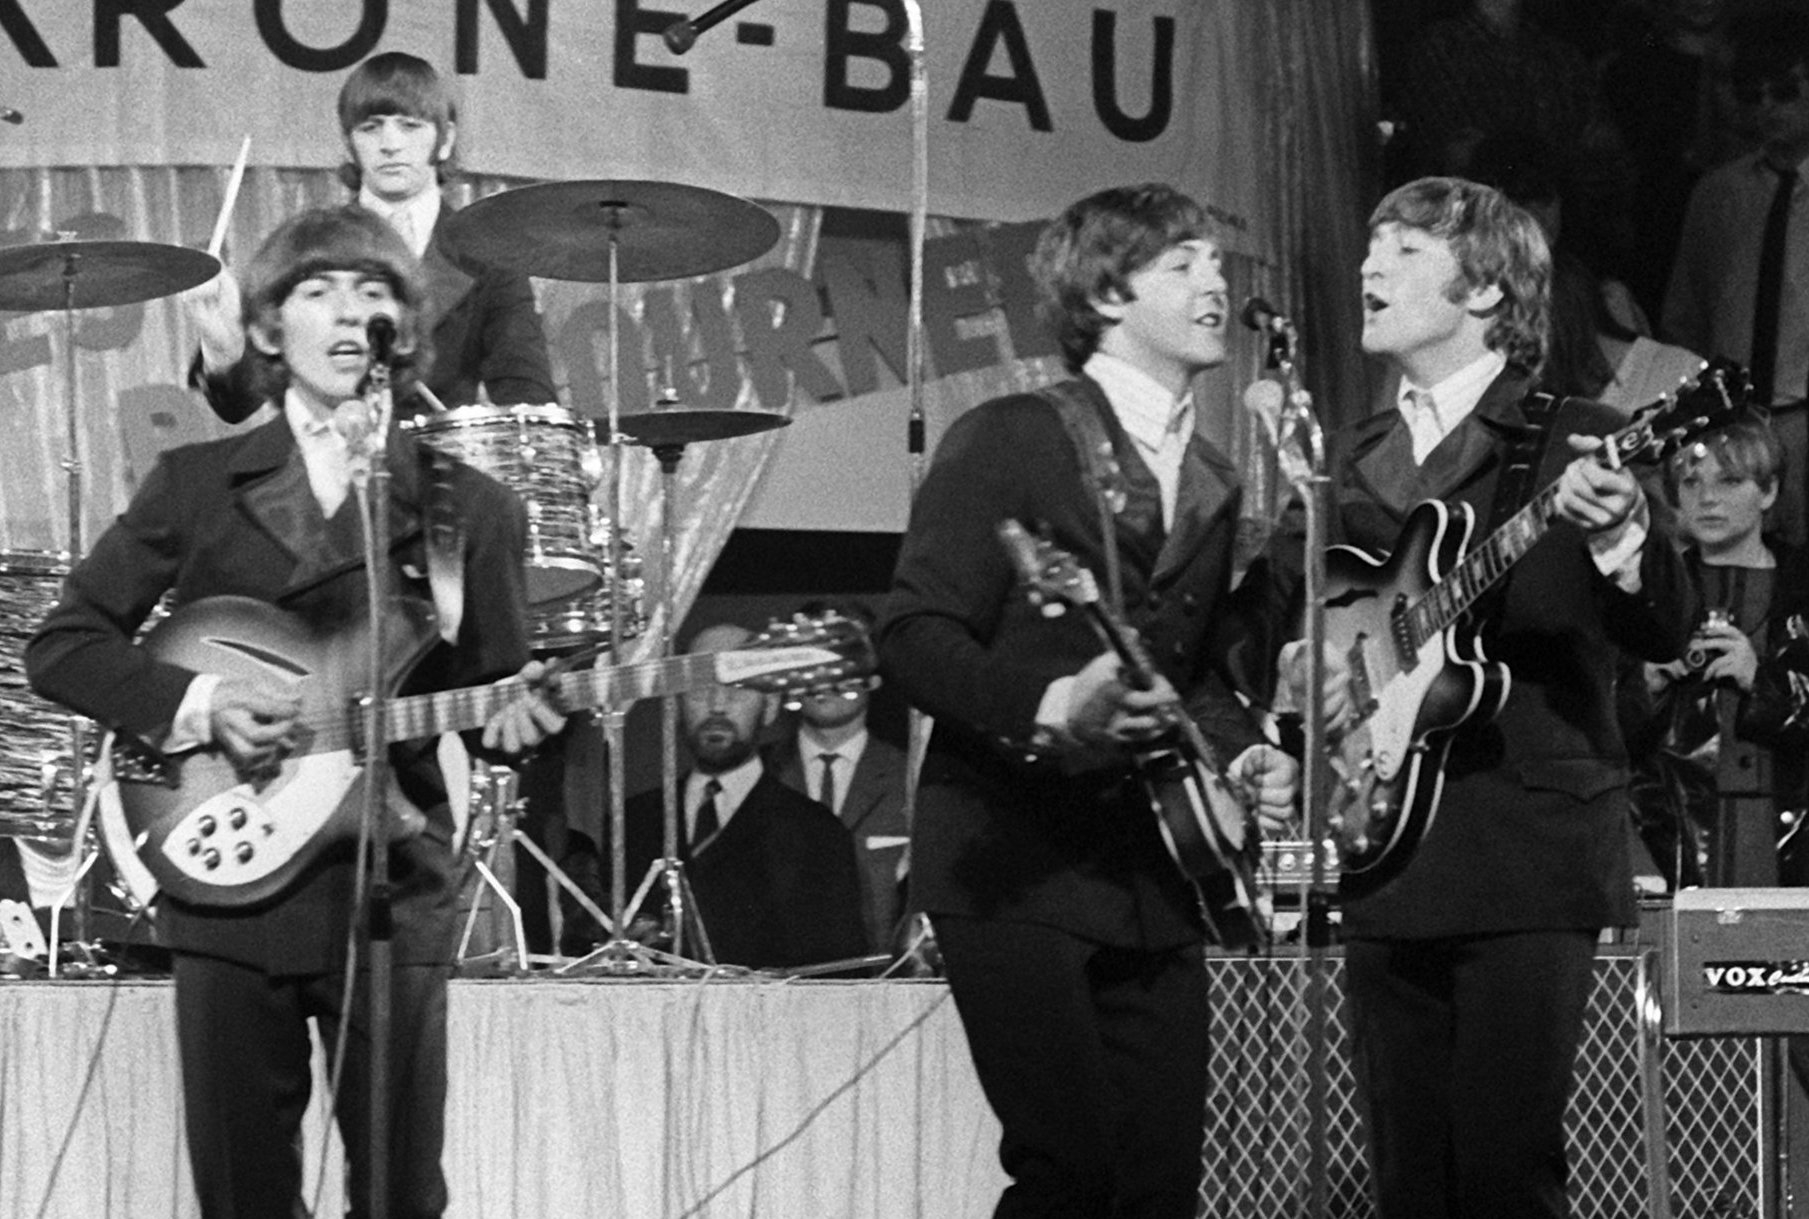 Heute vor 60 Jahren erschien das erste Album der Beatles.